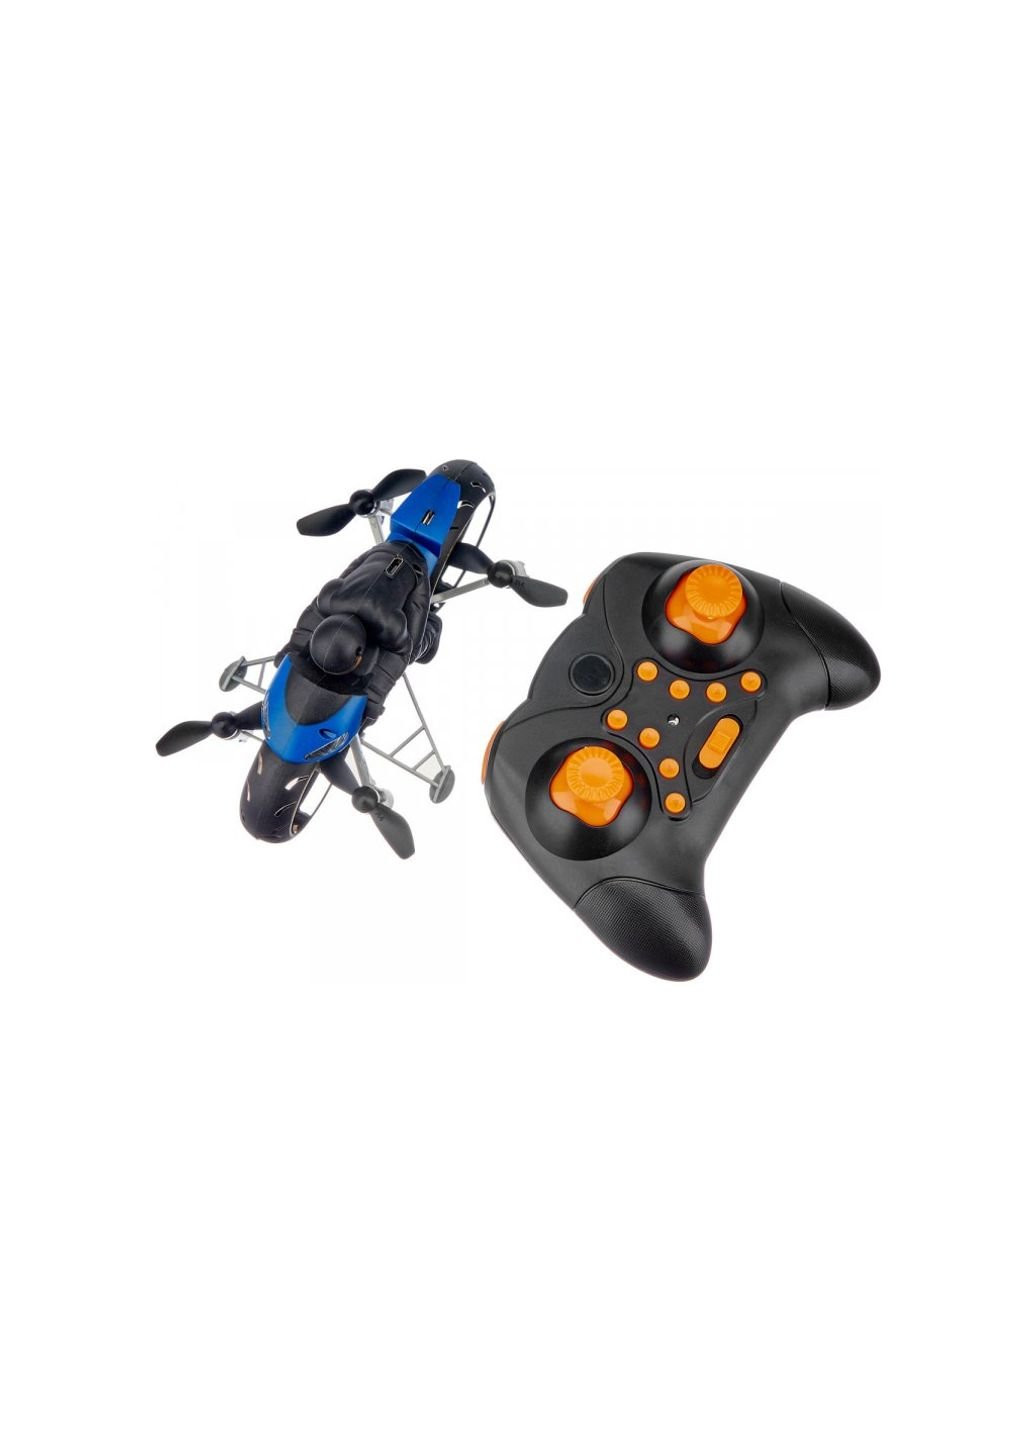 Радиоуправляемая игрушка Квадрокоптер Flying Motorcycle Blue (RH818 blue) Zipp Toys (254078599)